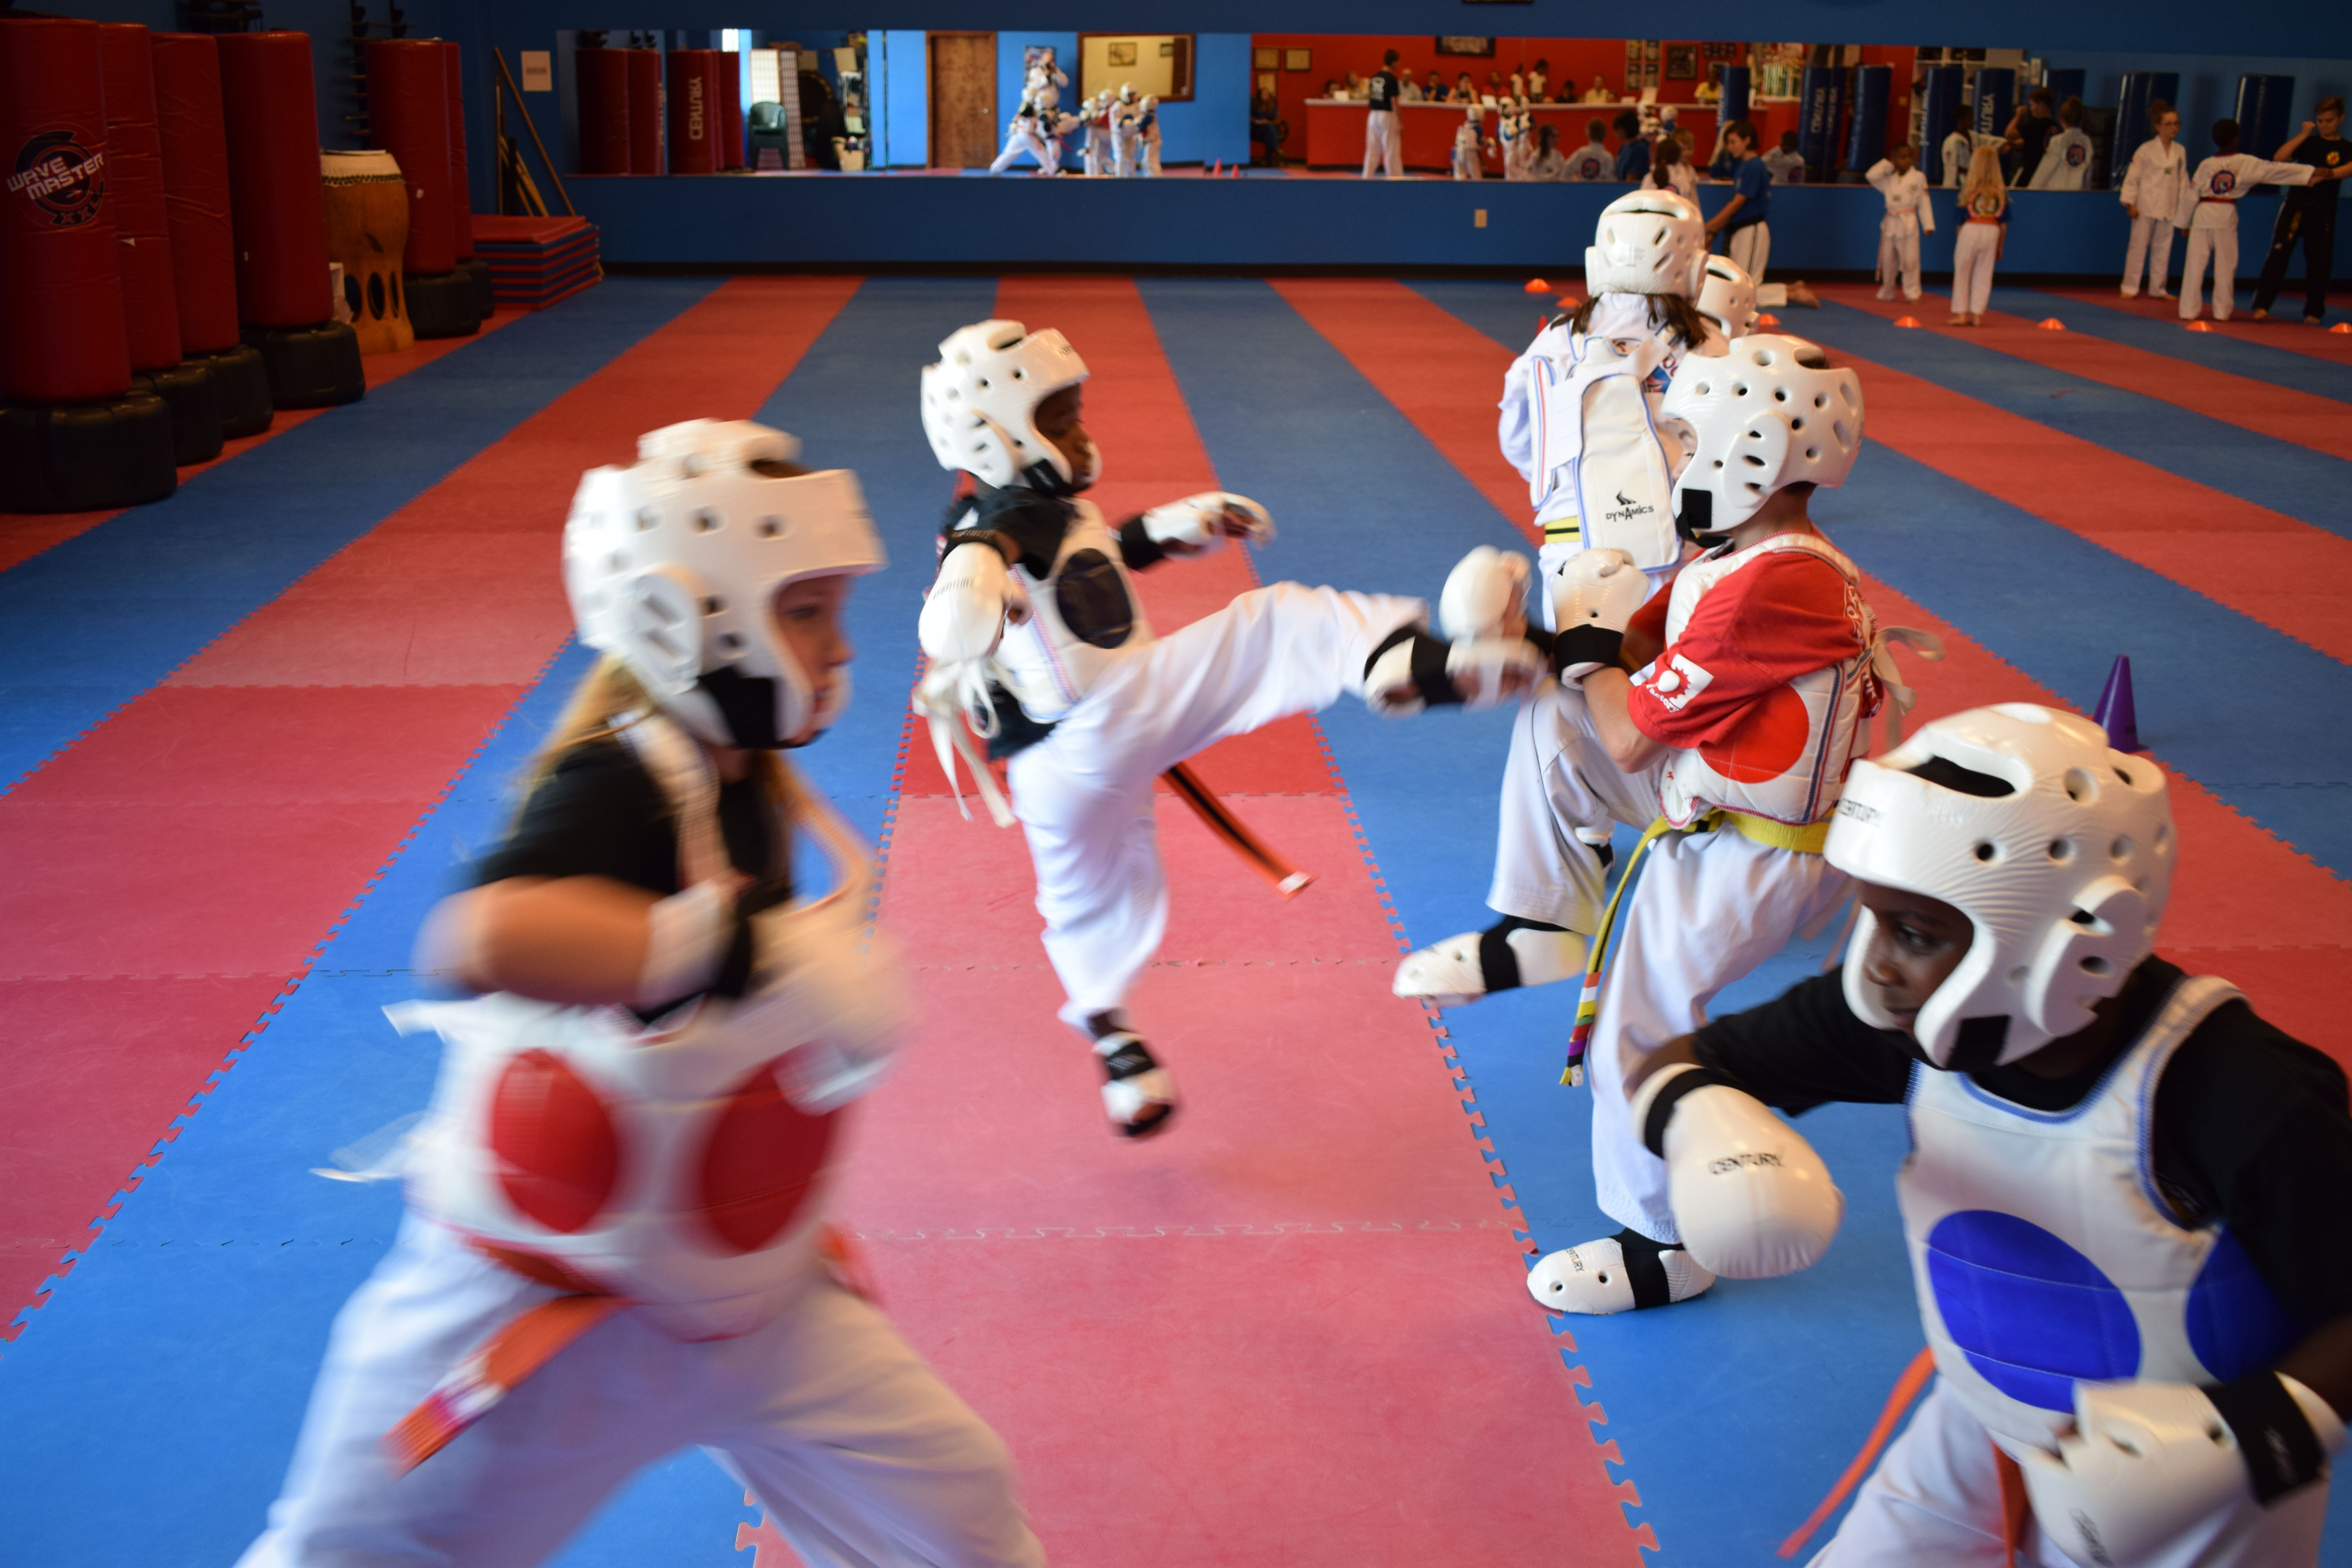 Martial Arts Karate Mat Premium 1 Inch x 1x1 Meter customer review photo 2